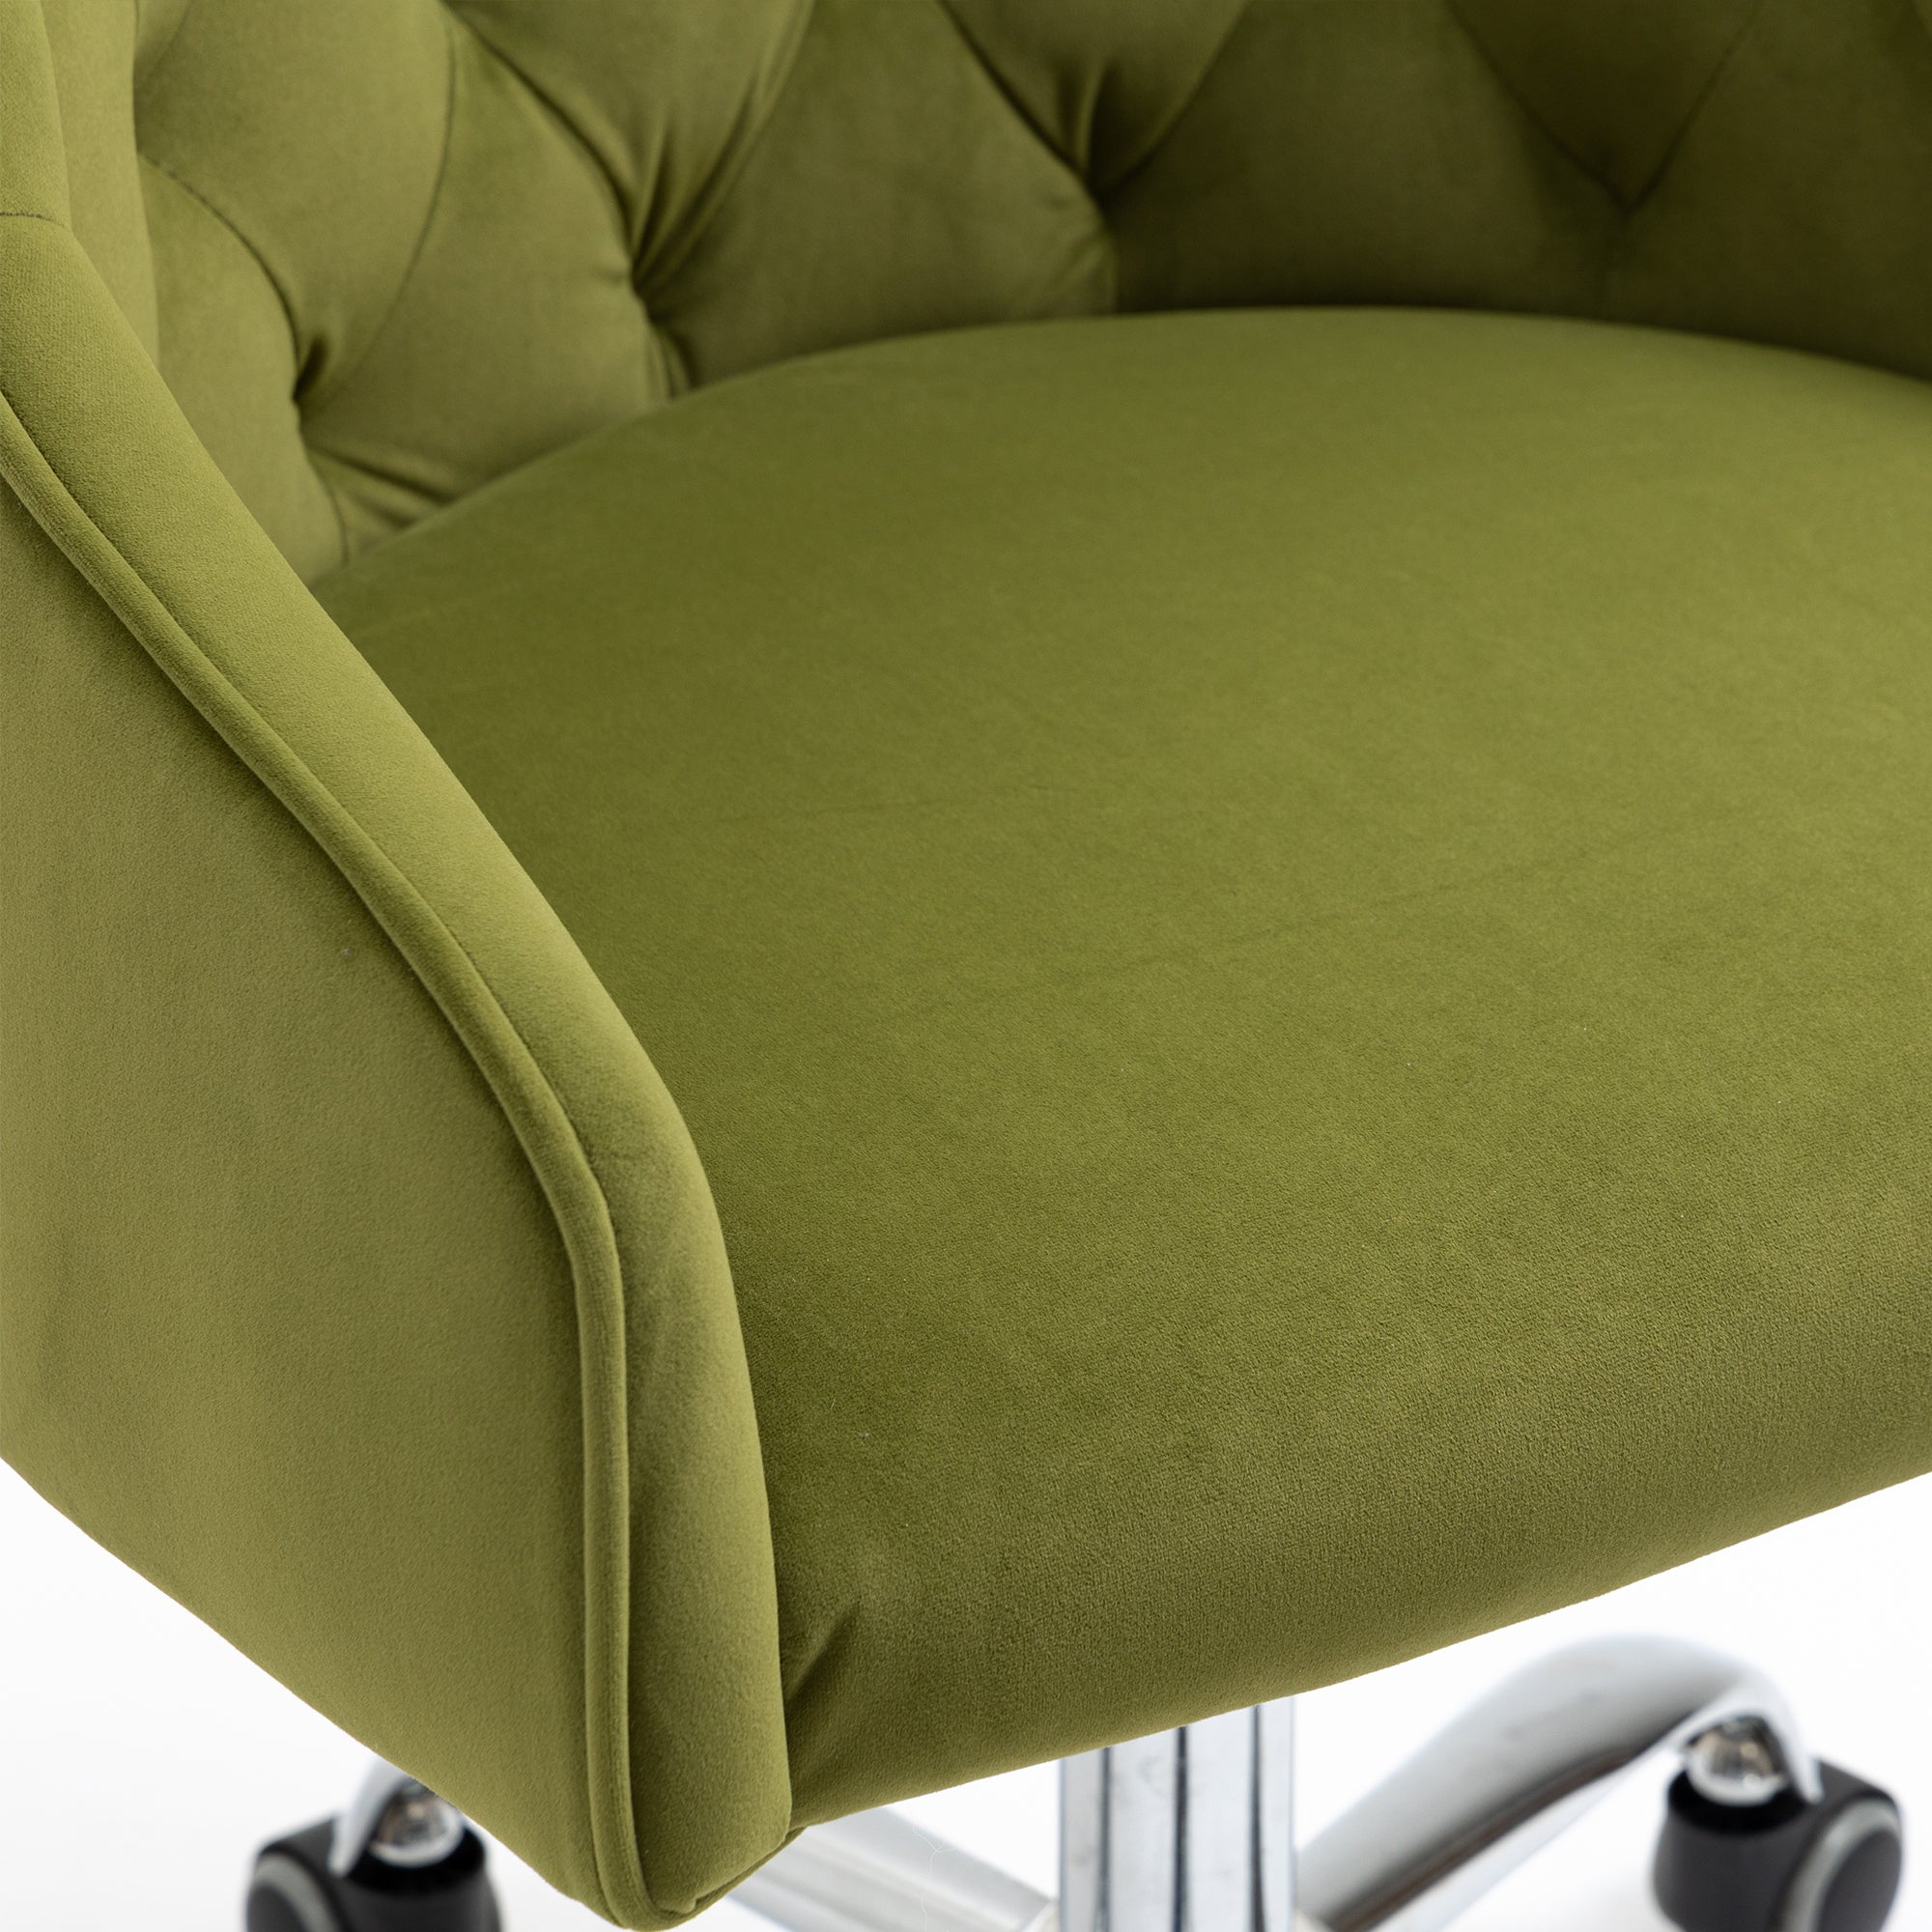 COOLMORE Swivel Shell Chair for Living Room Modern green-metal